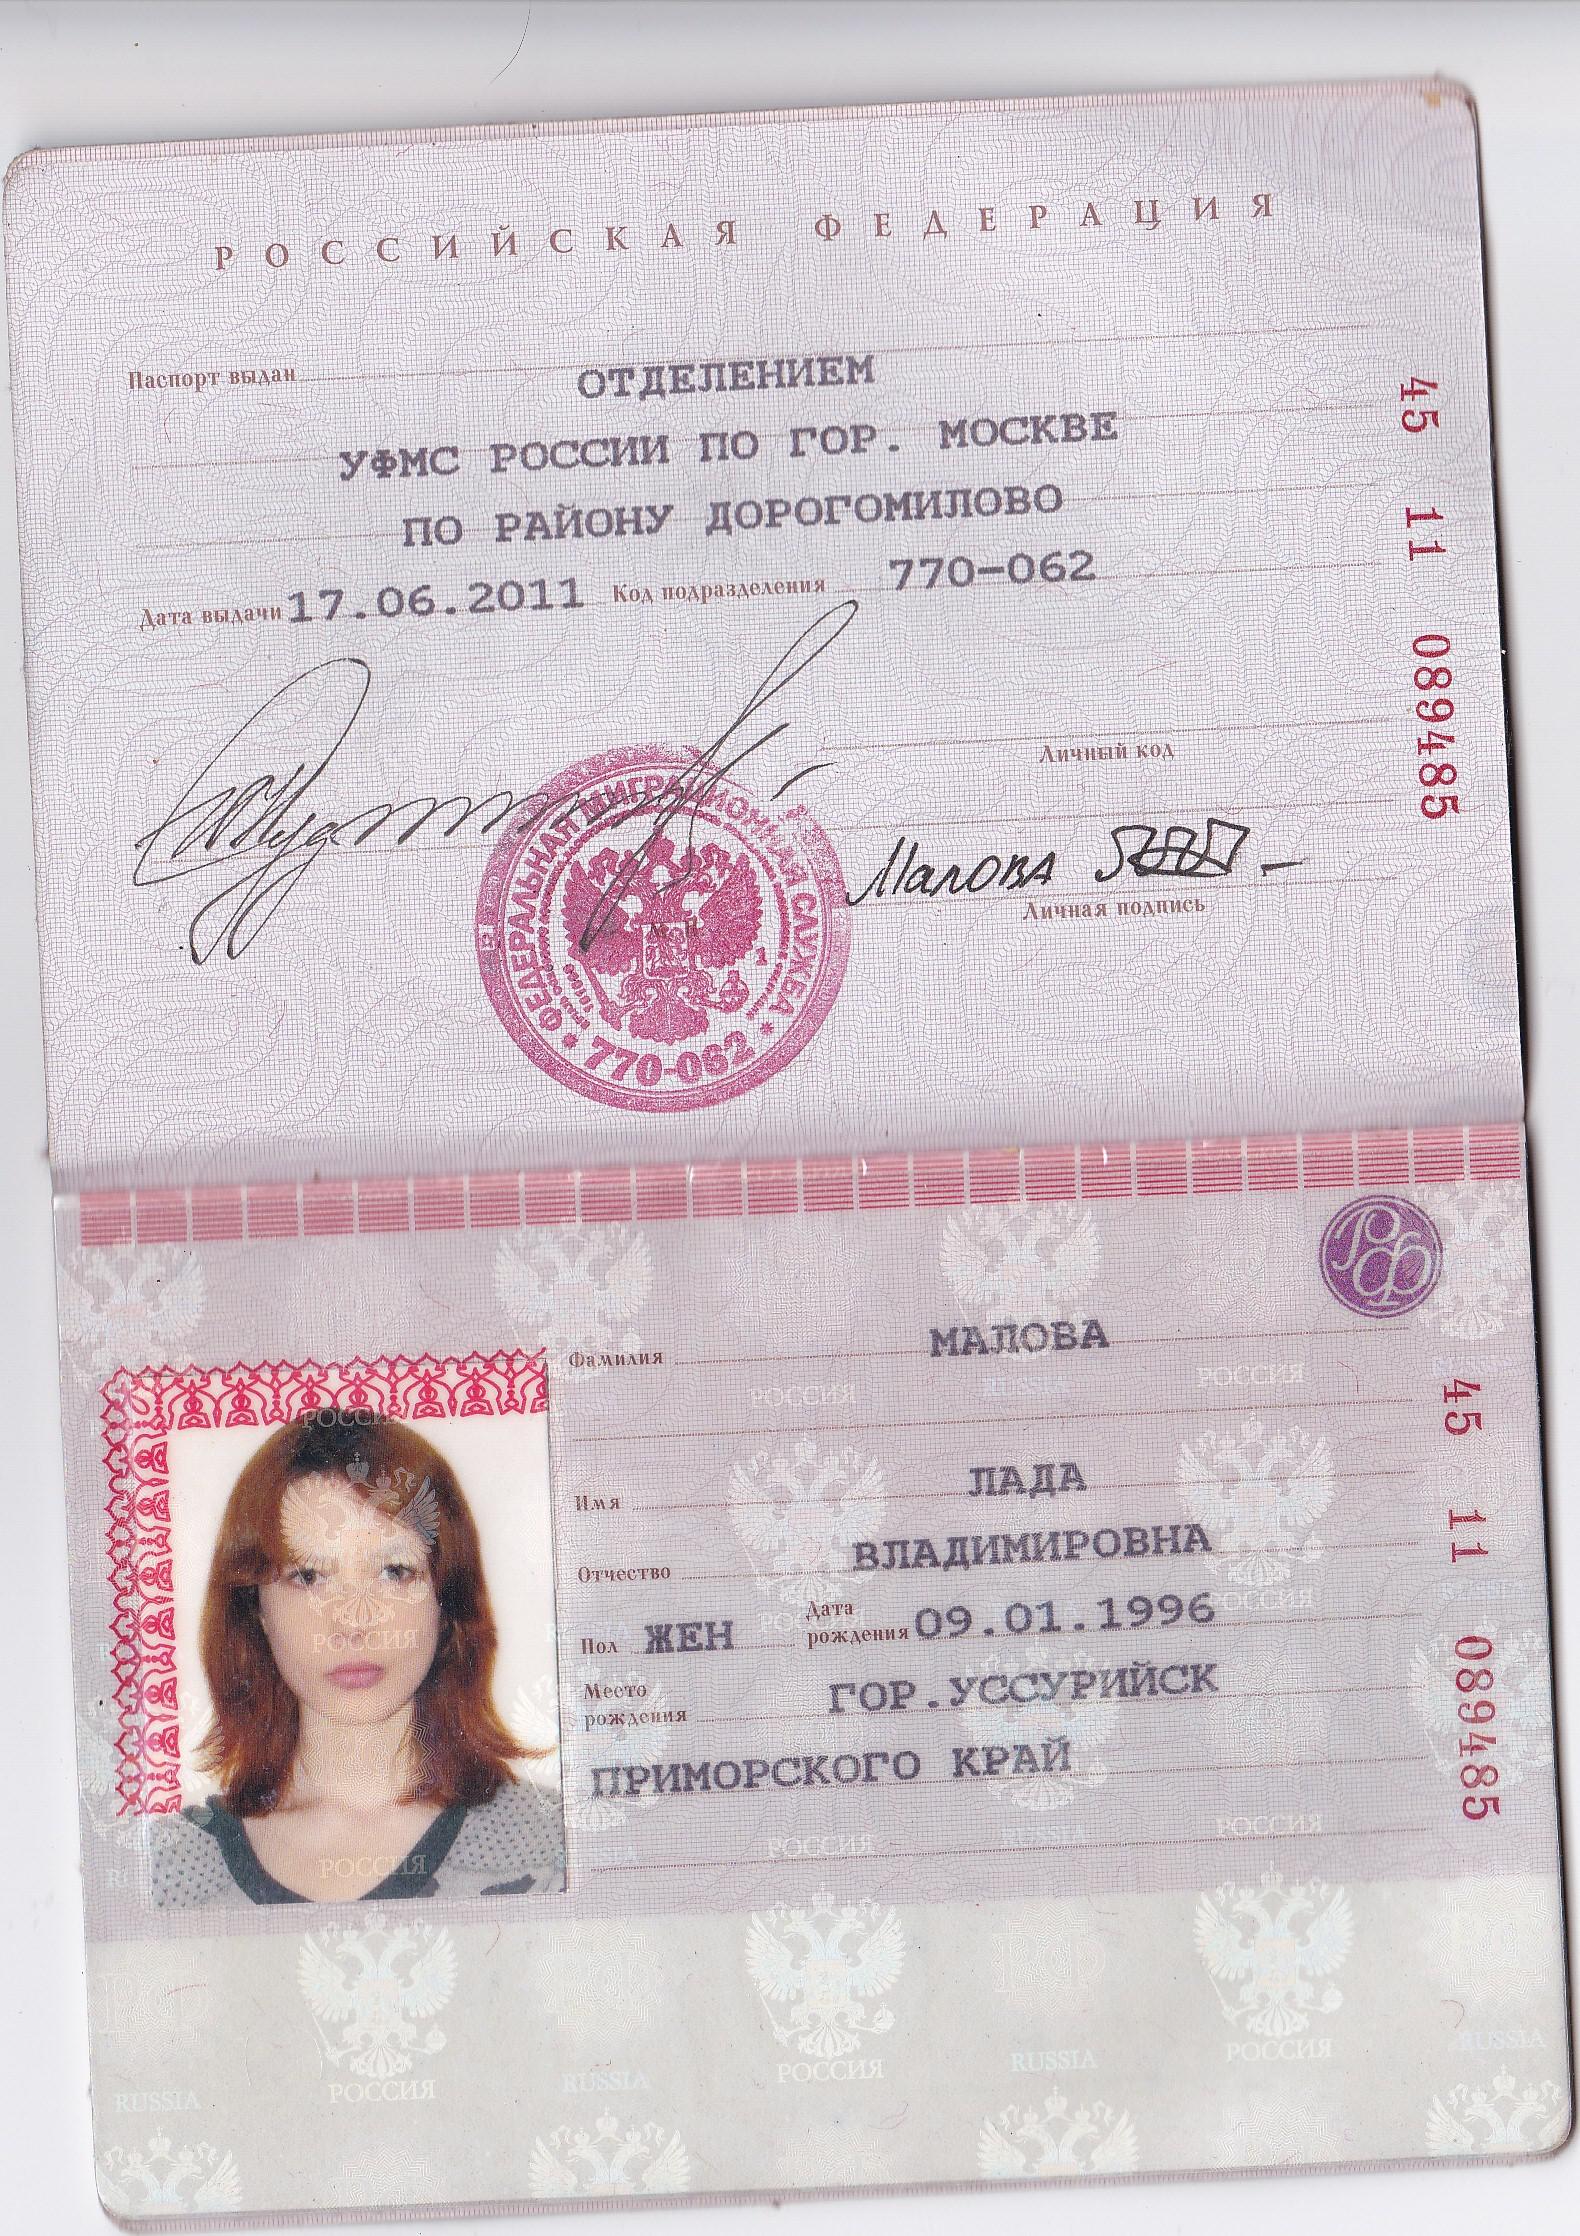 Получить деньги в Петропавловске Камчатском по паспорту без проверки